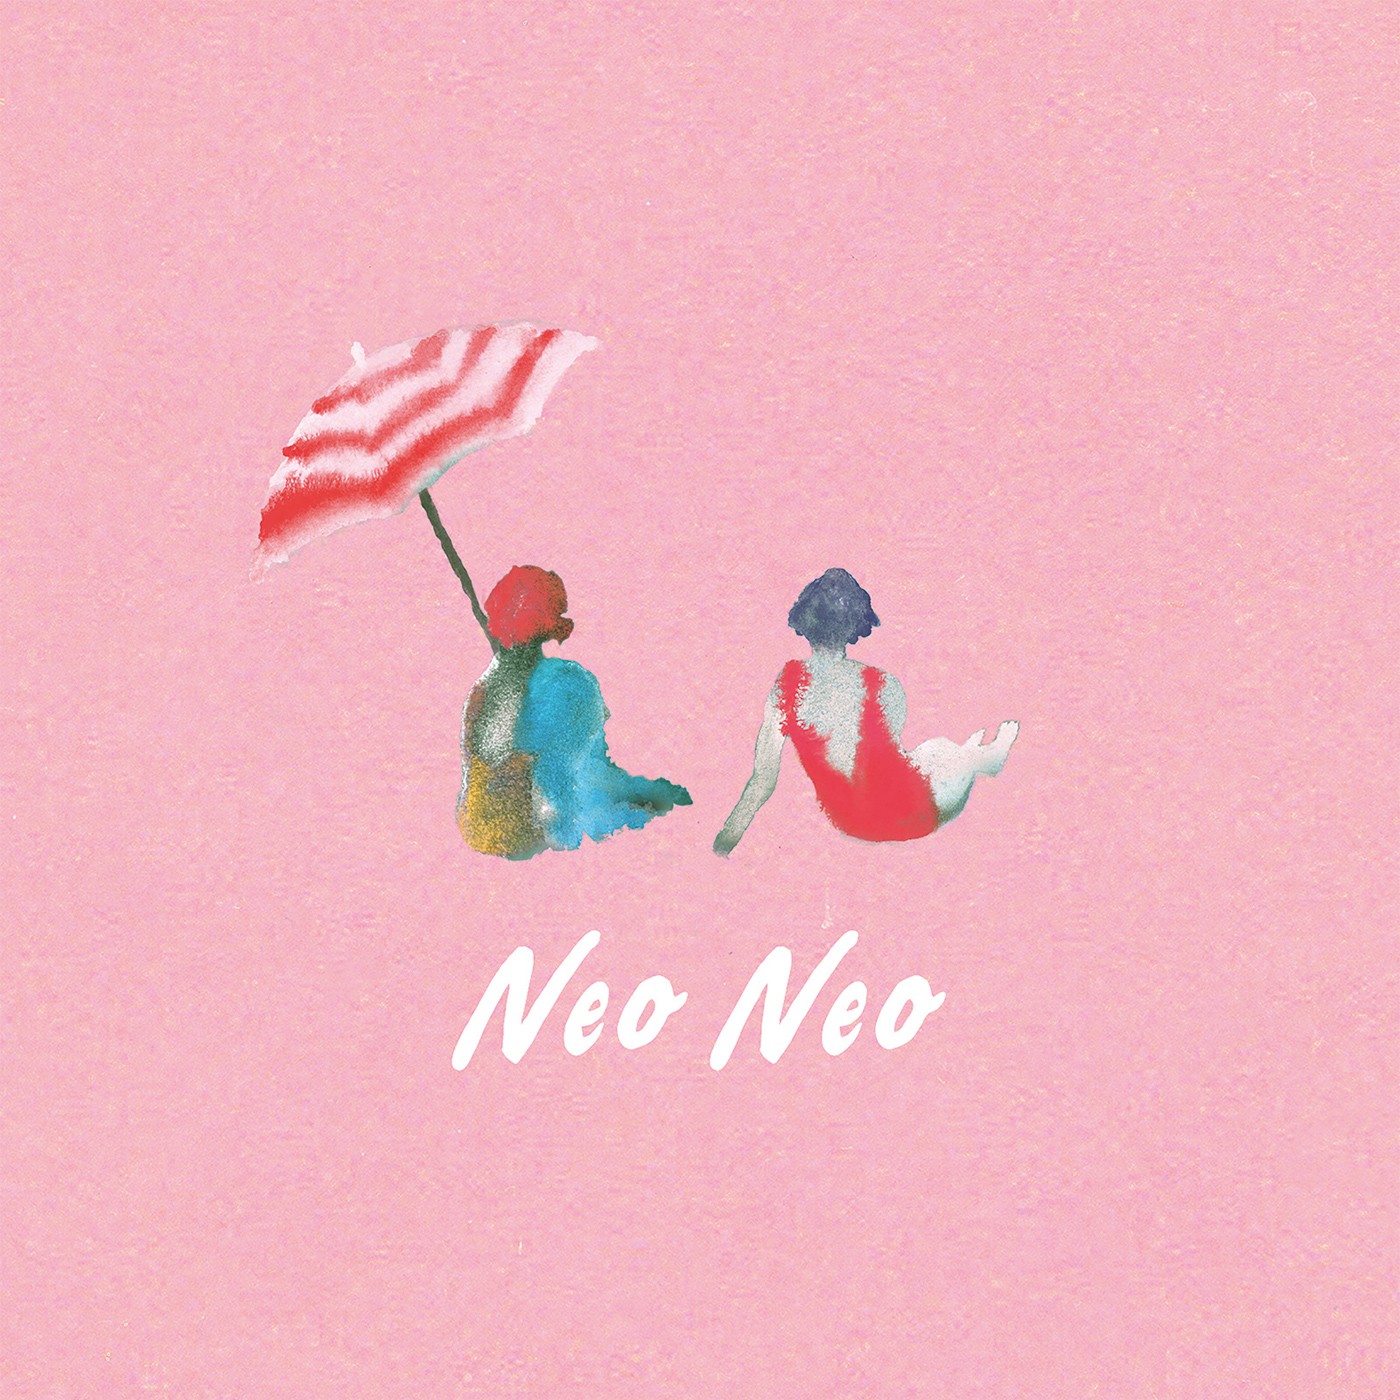 リュックと添い寝ごはん (Ryukku to Soine Gohan) – neo neo [FLAC / WEB] [2020.12.09]